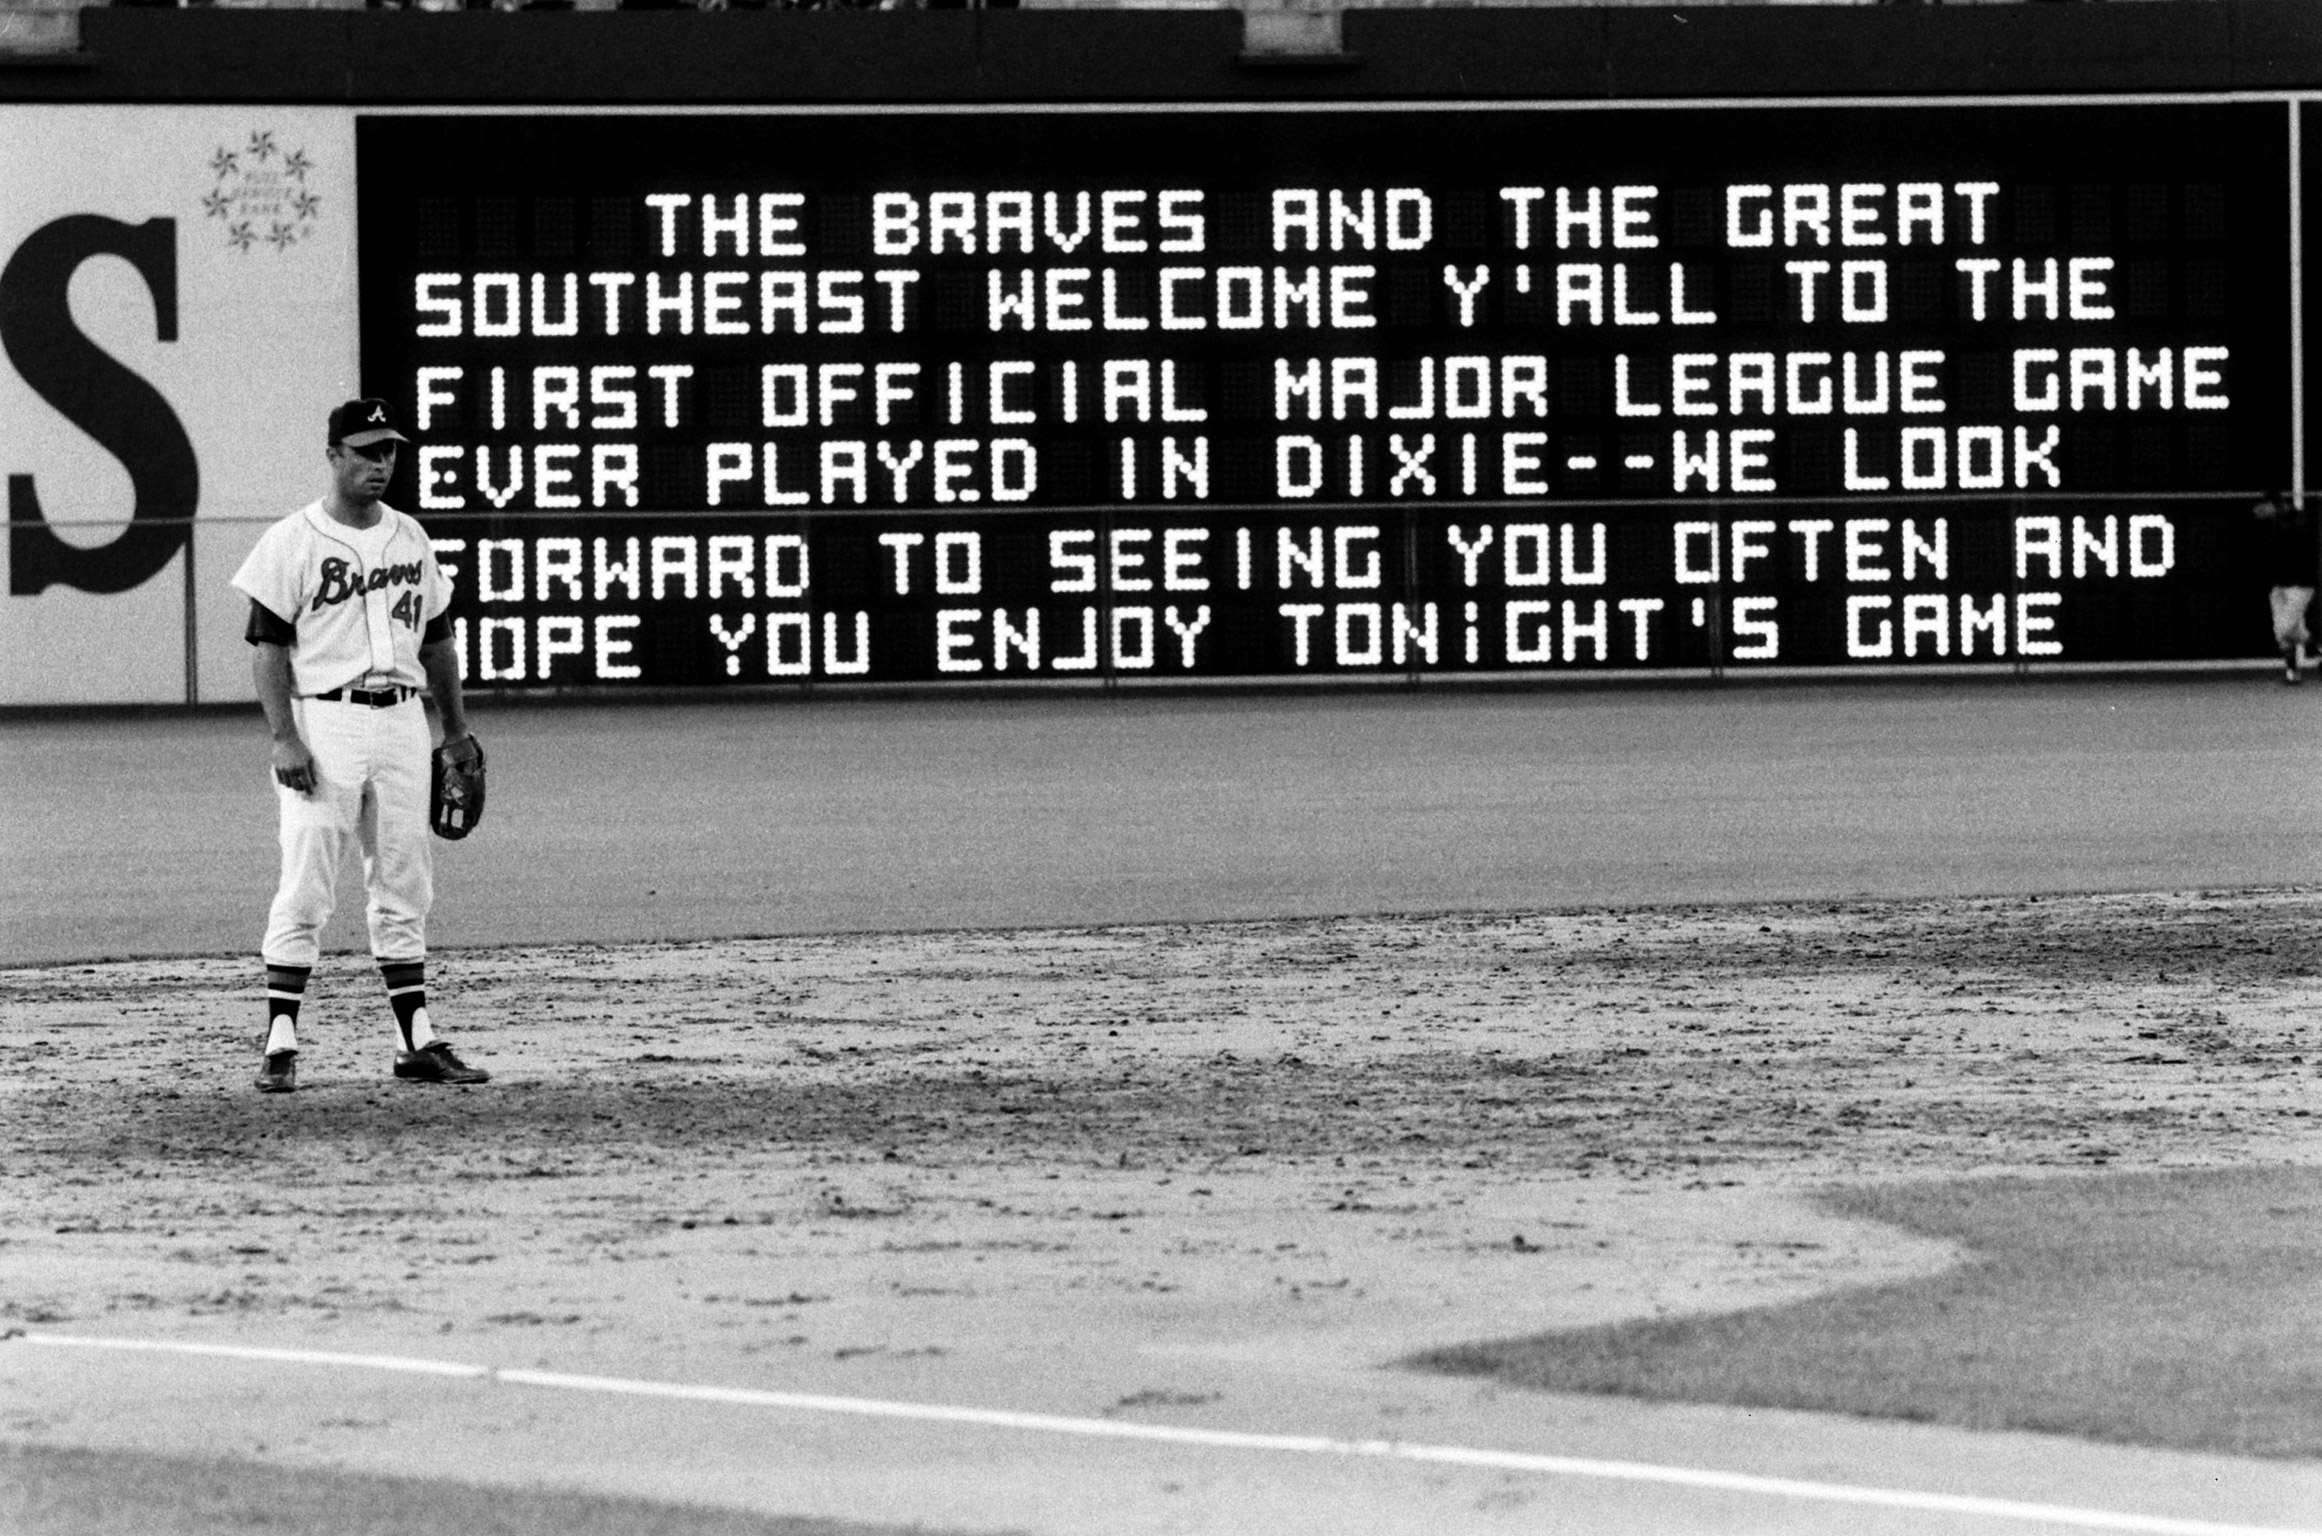 Atlanta Braves opening day, 1966.